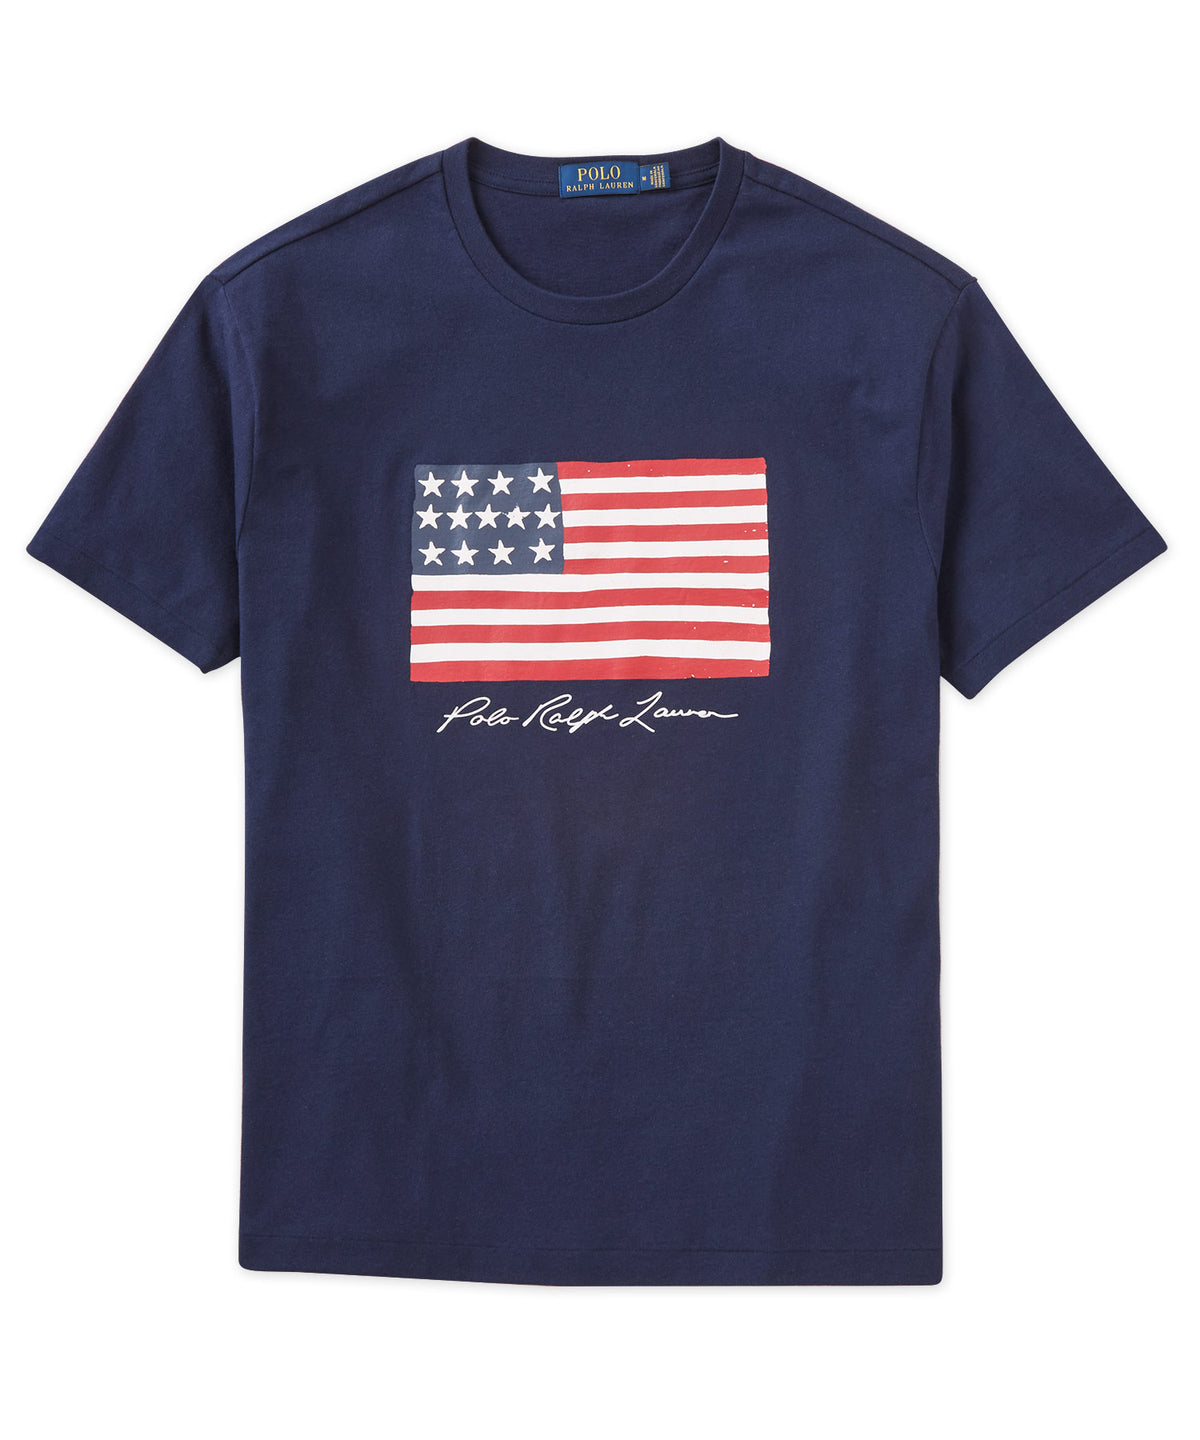 Polo Ralph Lauren Short Sleeve American Flag T-Shirt, Men's Big & Tall